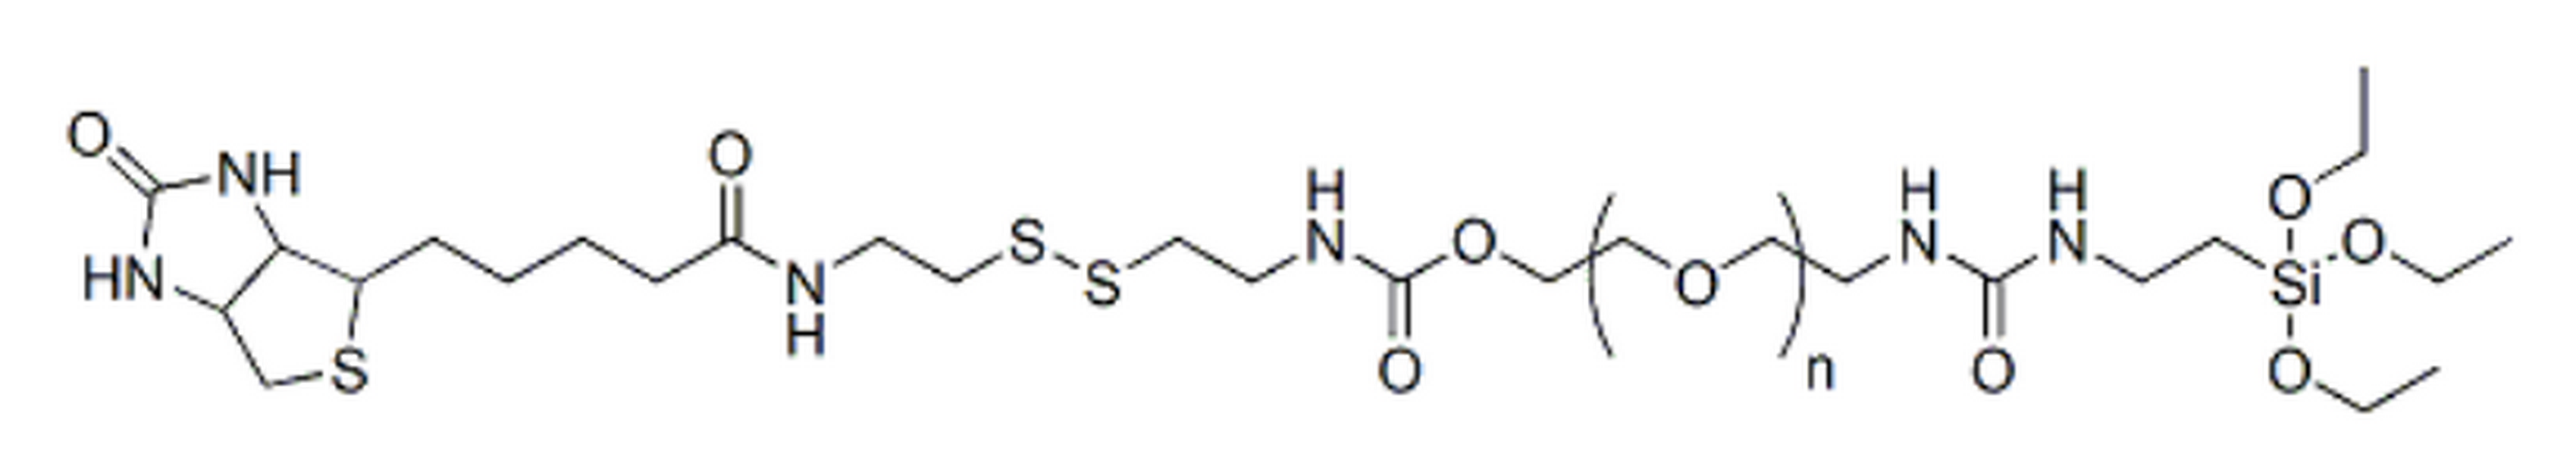 Biotin-S-S-PEG-silane, MW 2K